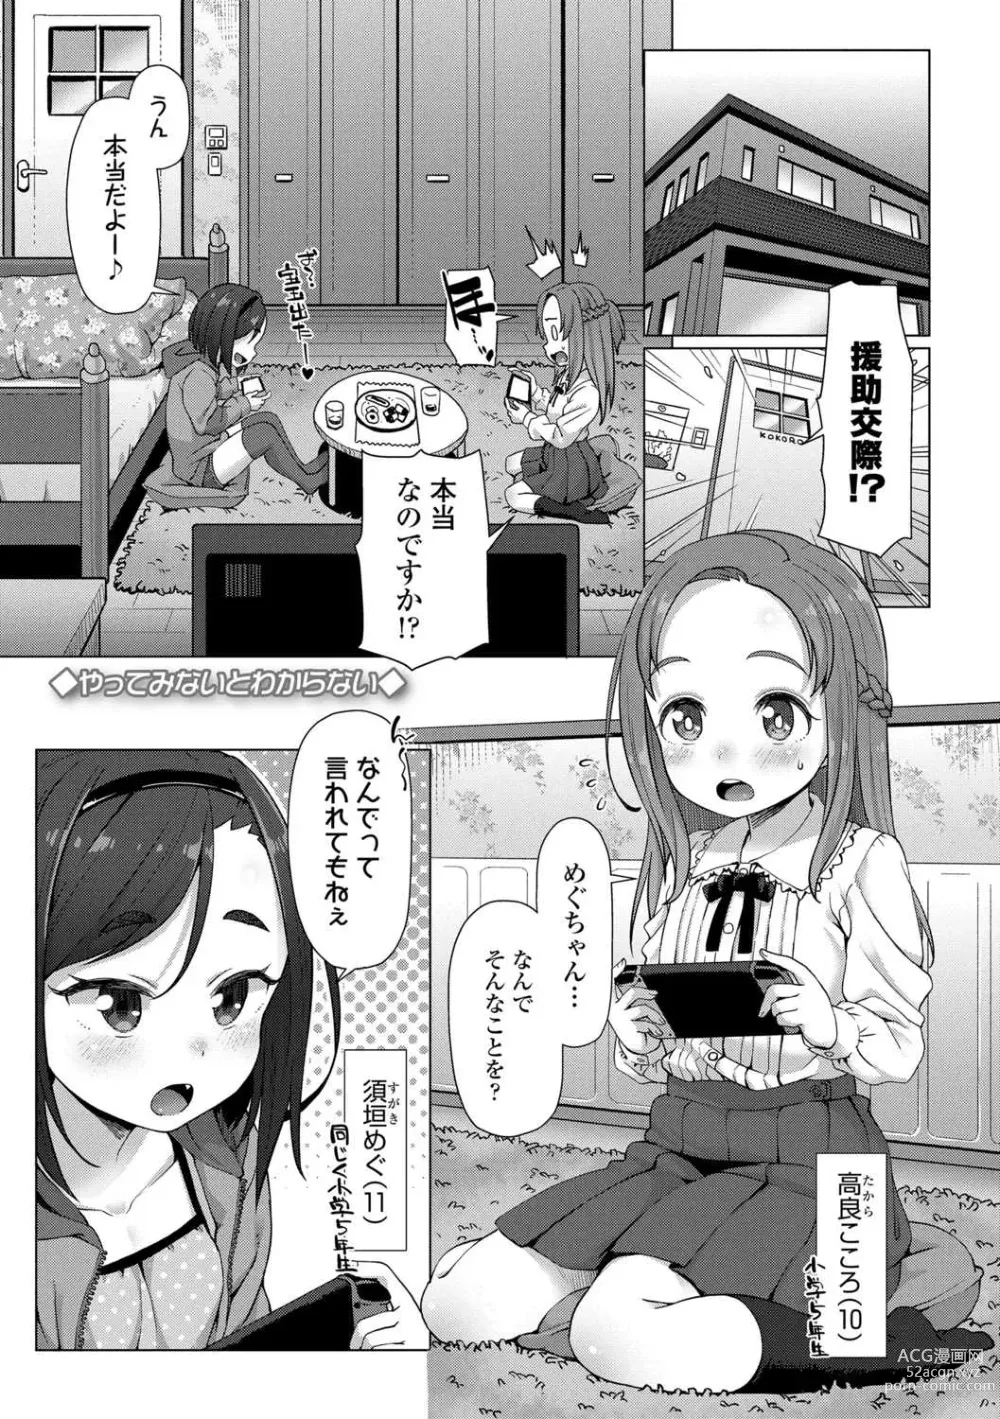 Page 5 of manga Nukunuku Mini Holes